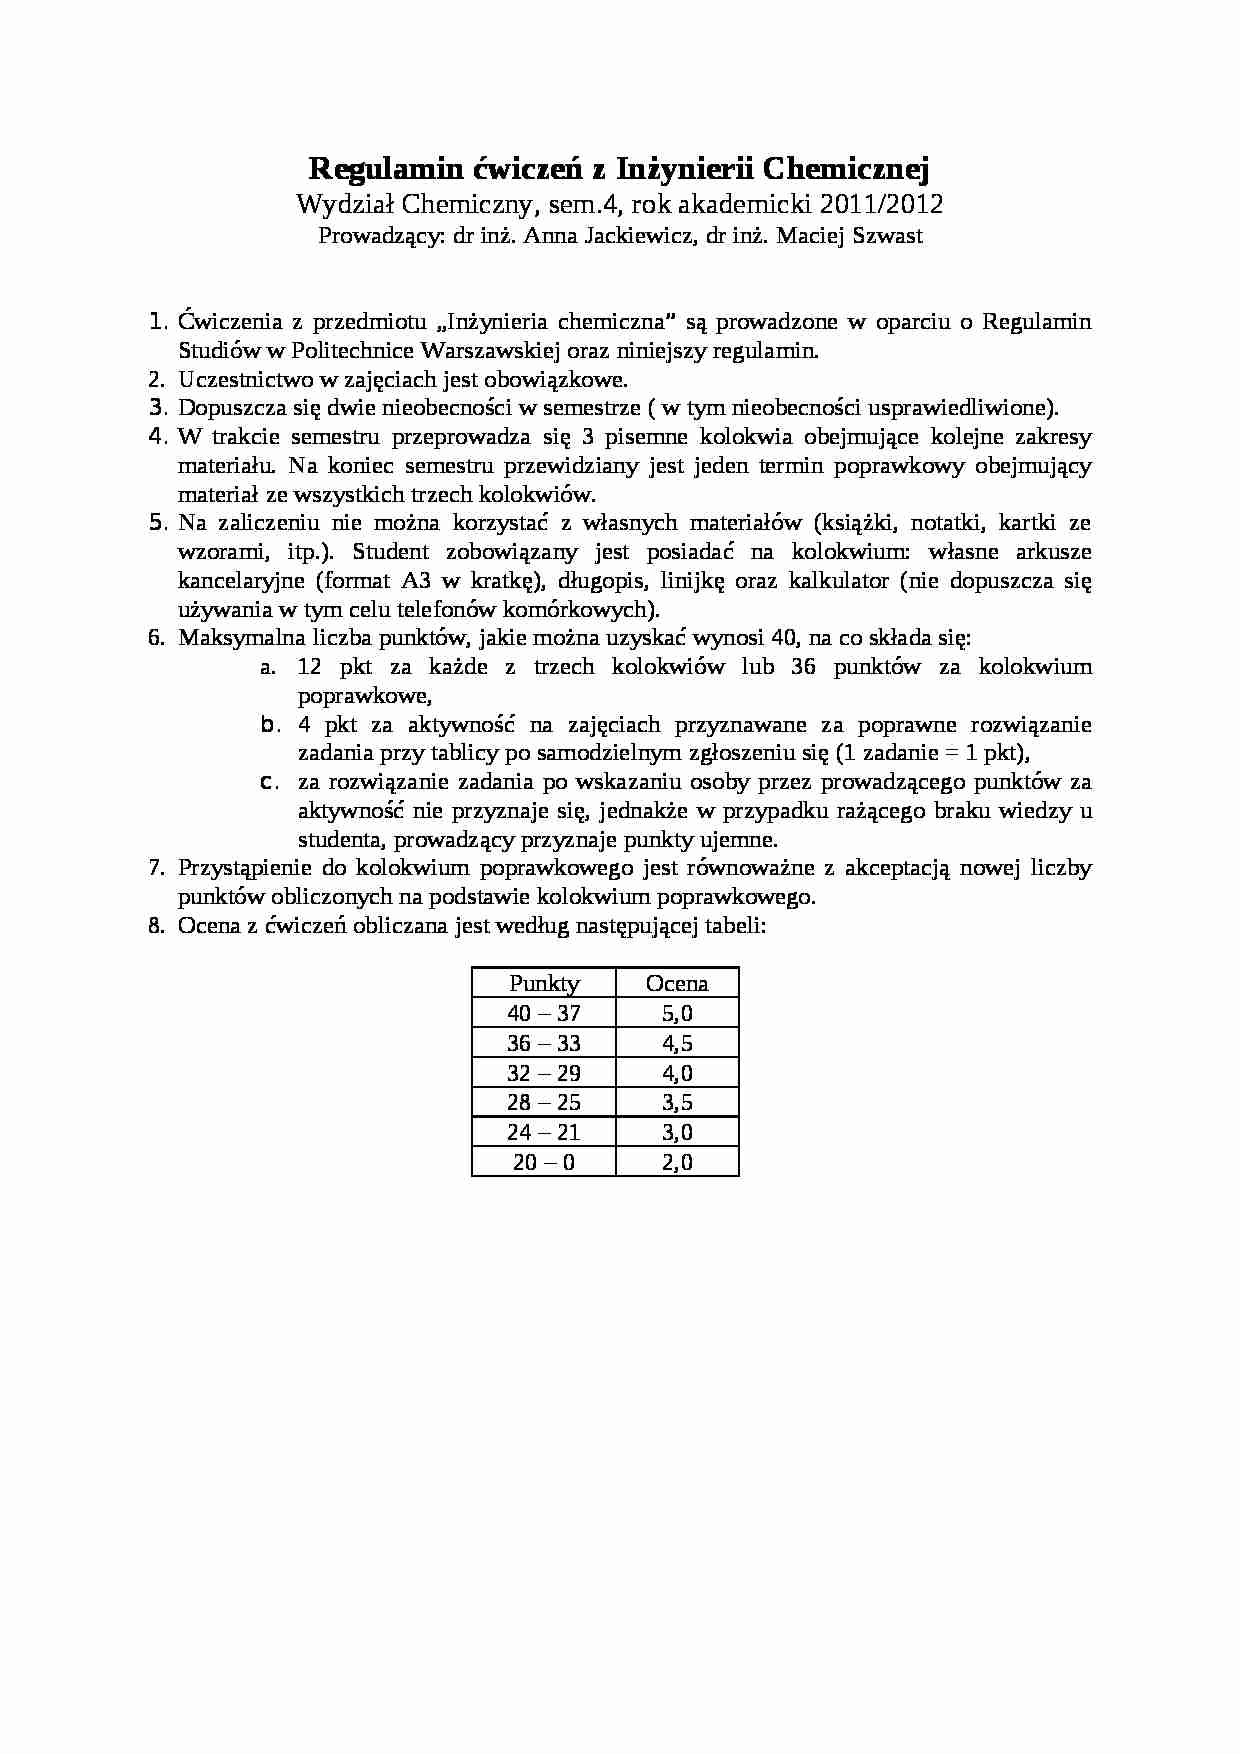 Inżynieria chemiczna - regulamin ćwiczeń - strona 1